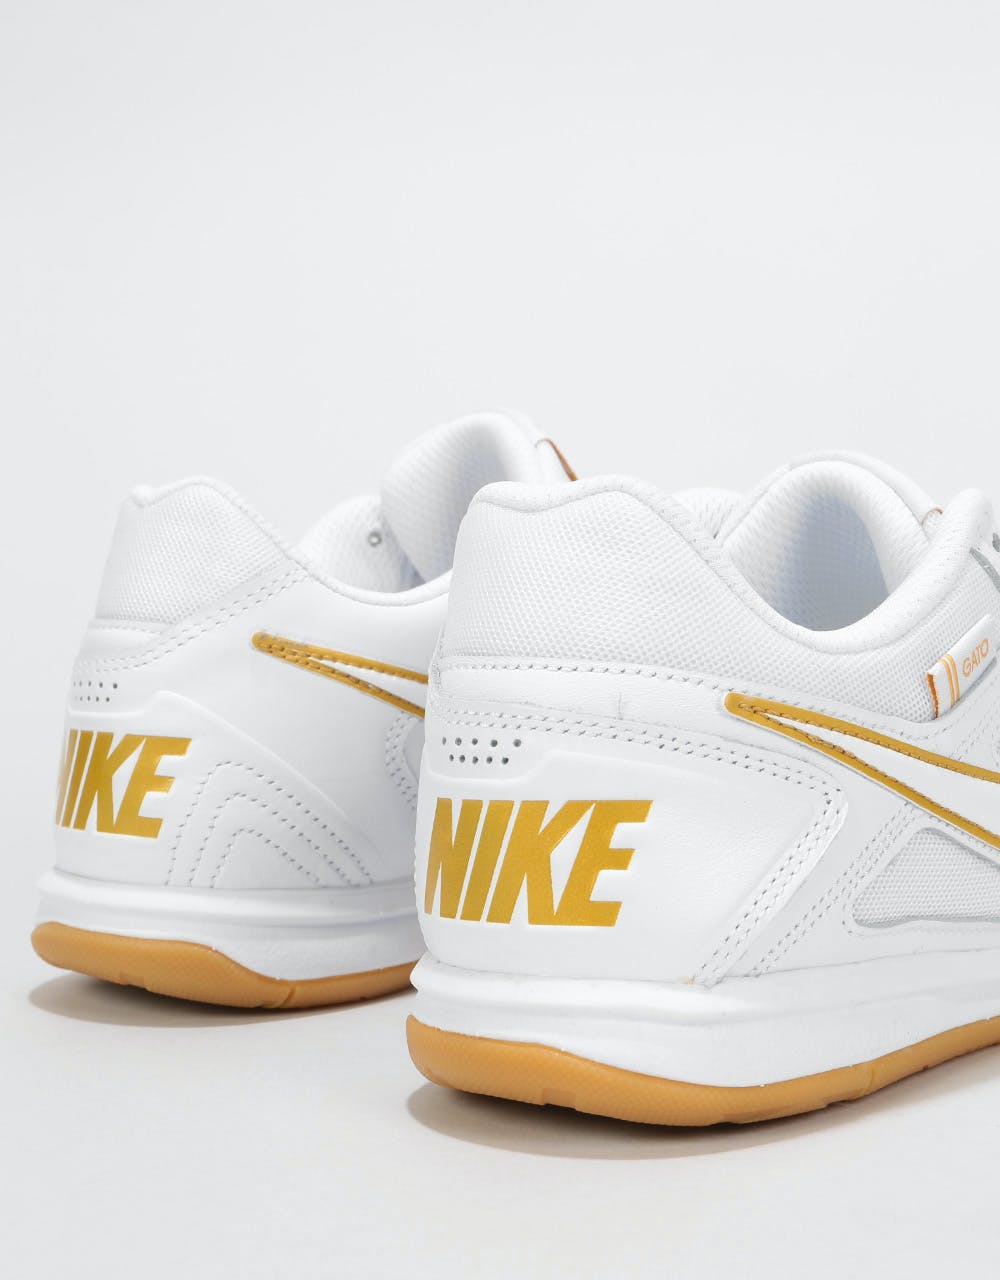 Nike SB Gato Skate Shoes - White/White-Metallic Gold